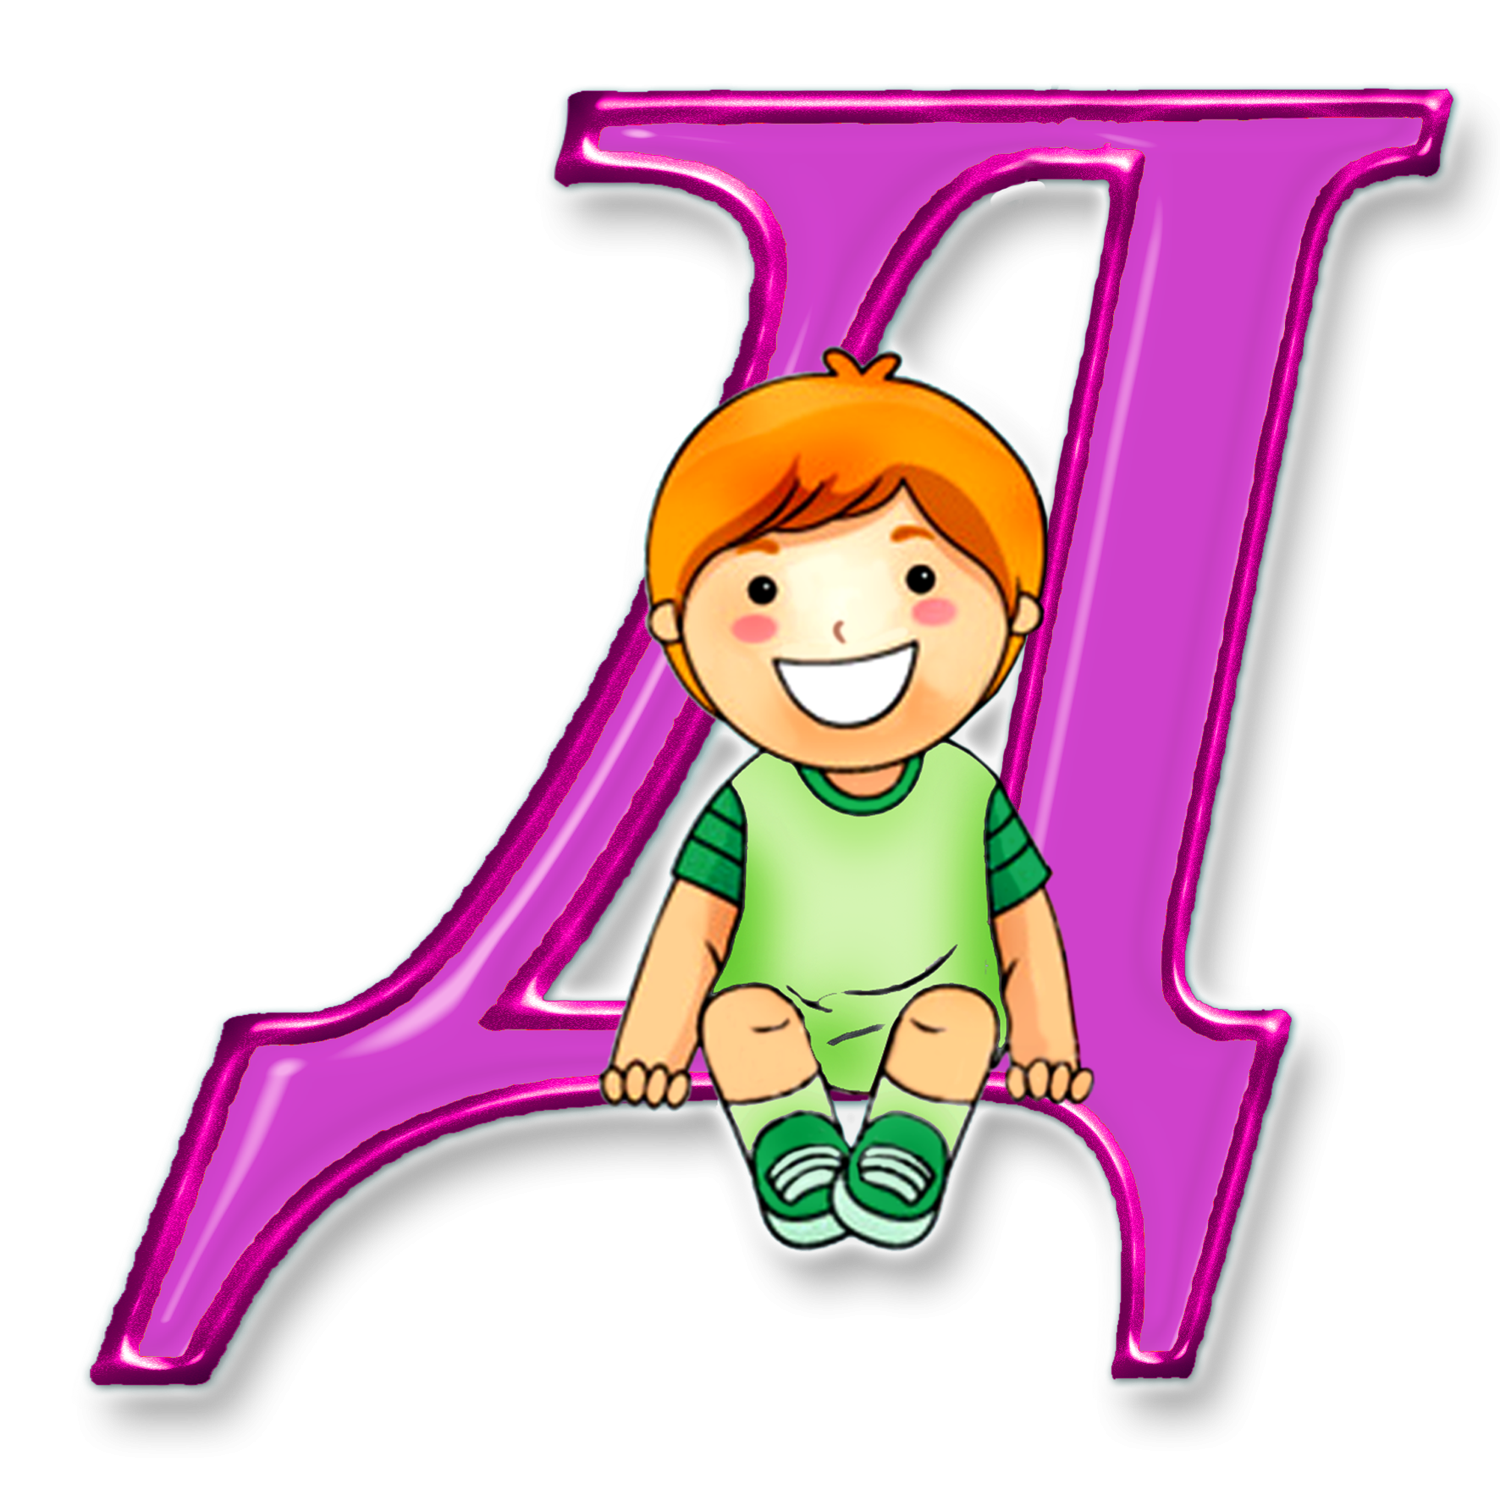 Алфавит и буквы. Буква д. Буквы алфавита для детей. Красивые детские буквы. Покажи фотку букв